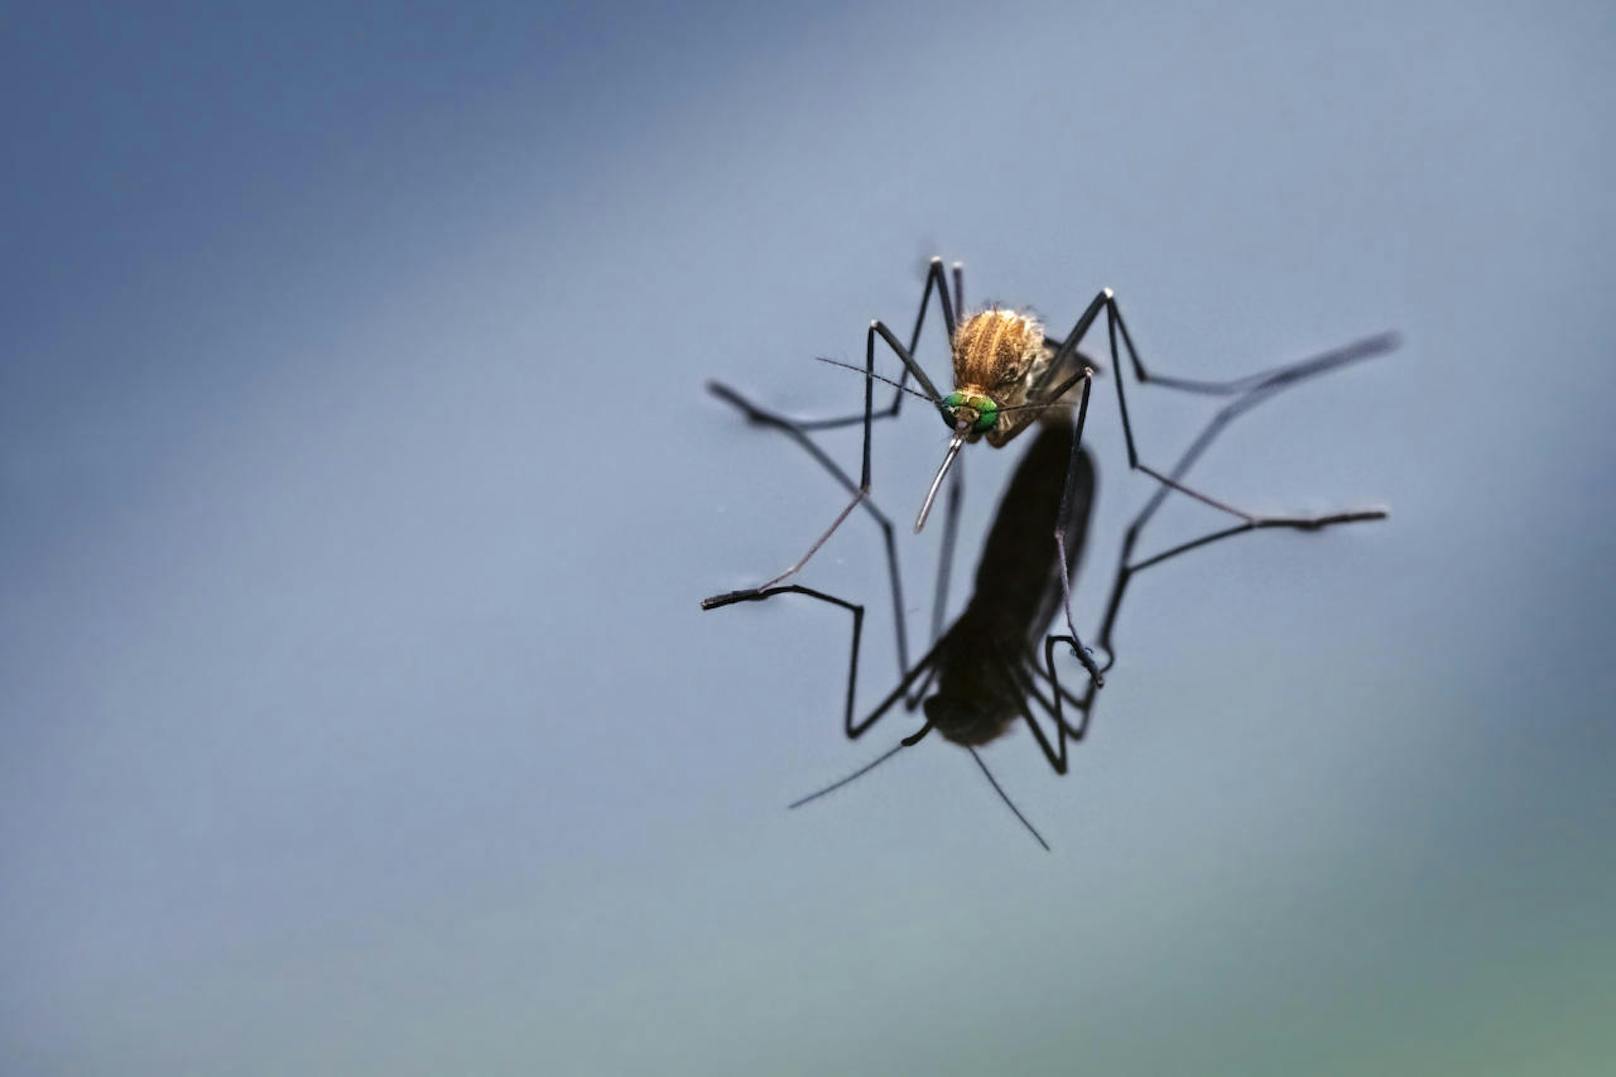 Bevor die Mücke zusticht, zieht sie eine Art schützende Scheide (labium) um ihren Stechapparat zurück.